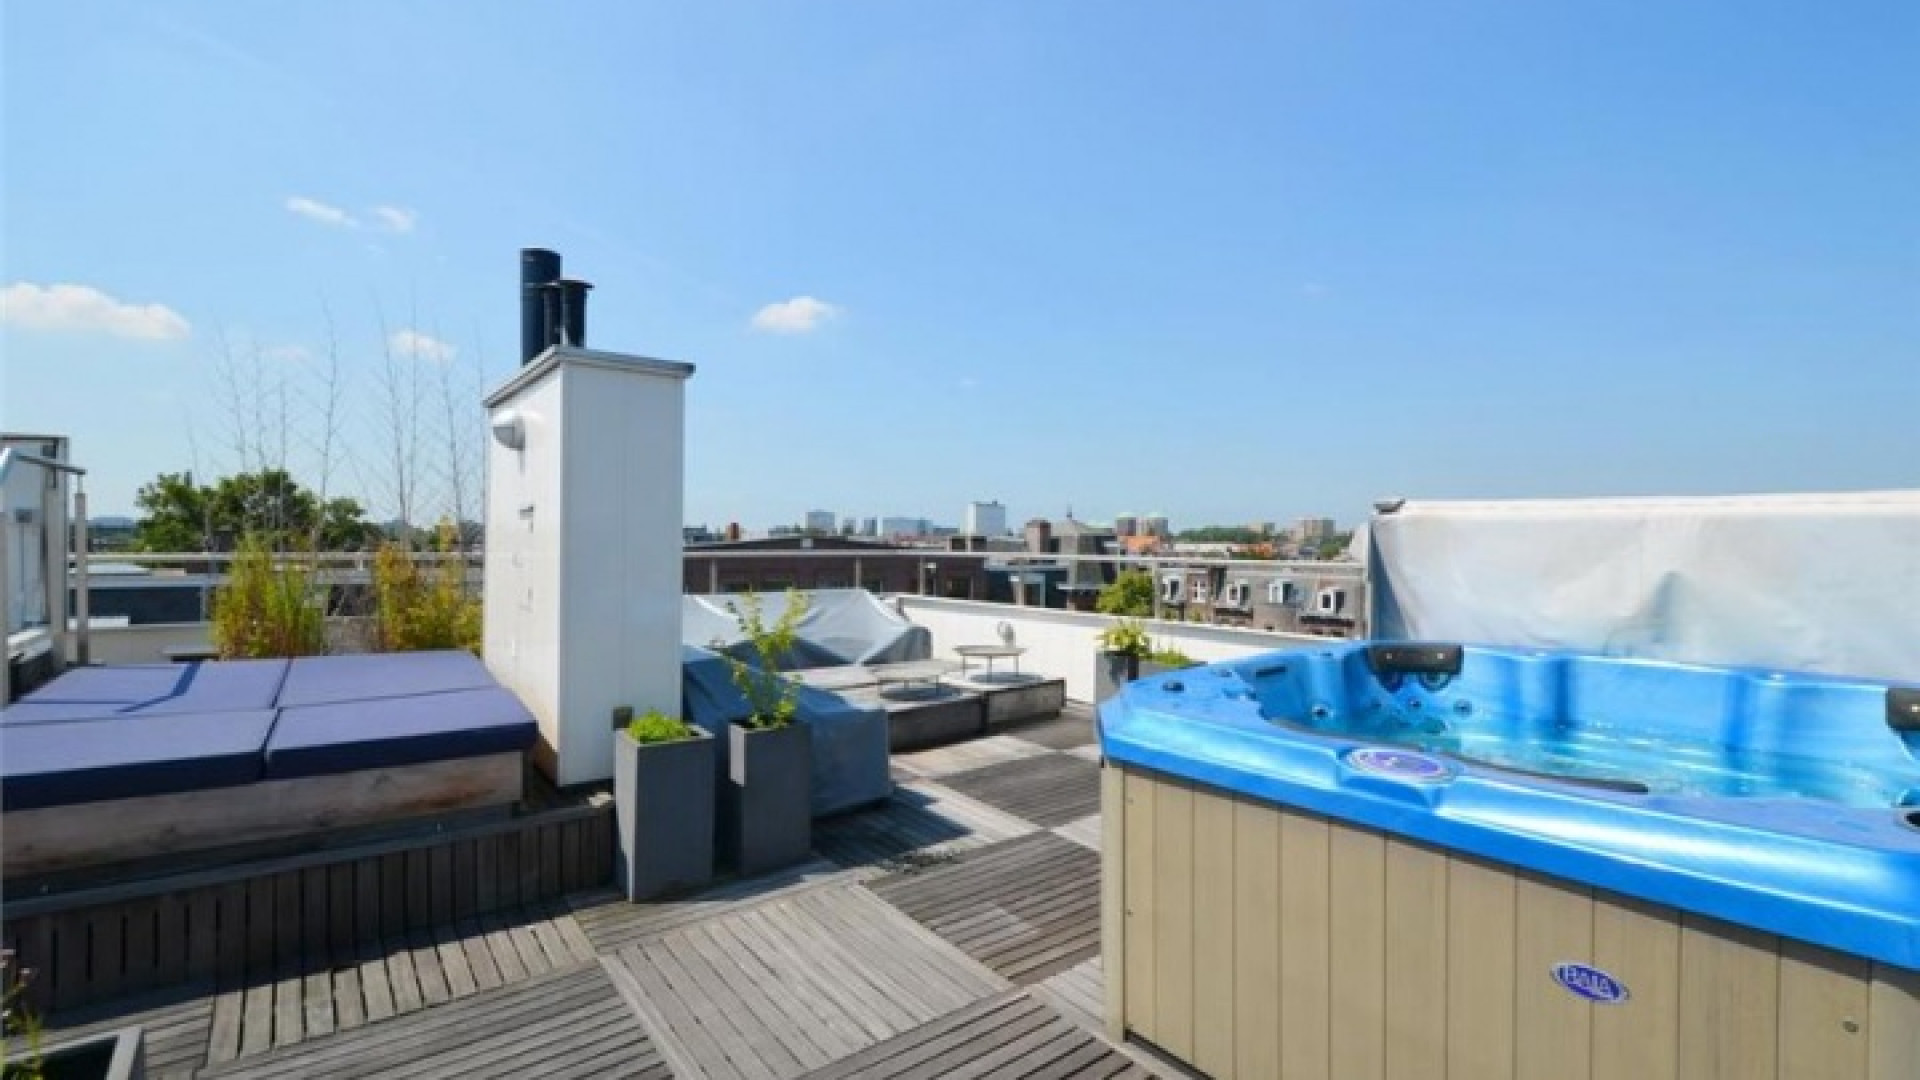 Frank Rijkaard vindt huurder voor dit zeer luxe appartement met jacuzzi op dakterras. Zie foto's 30